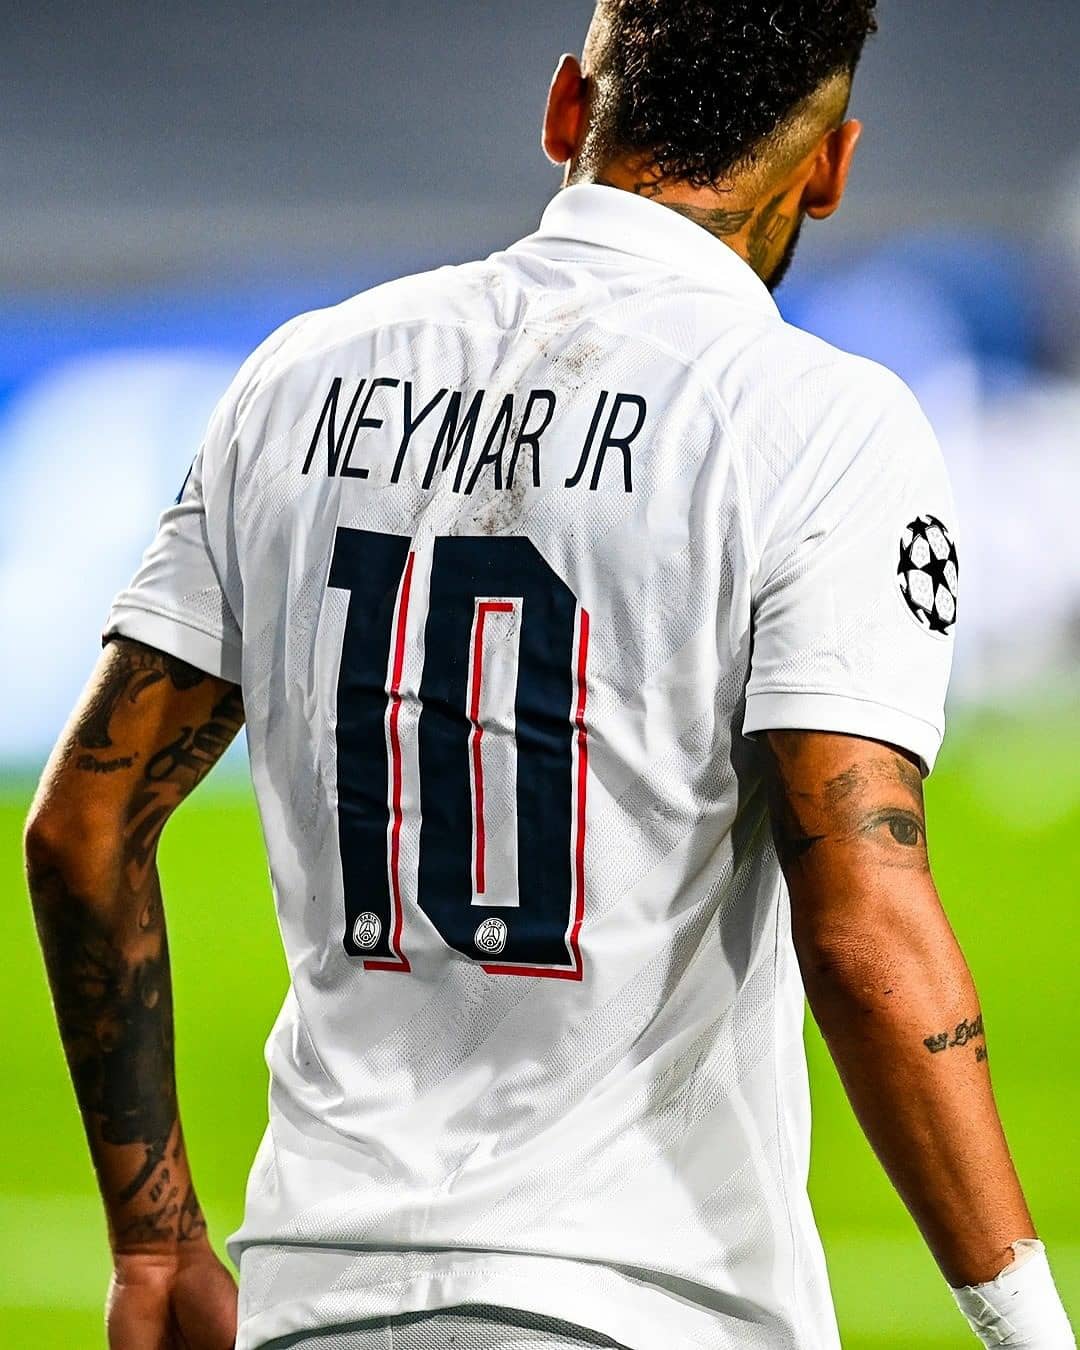 Neymar respondeu o perfil do GE. : r/futebol